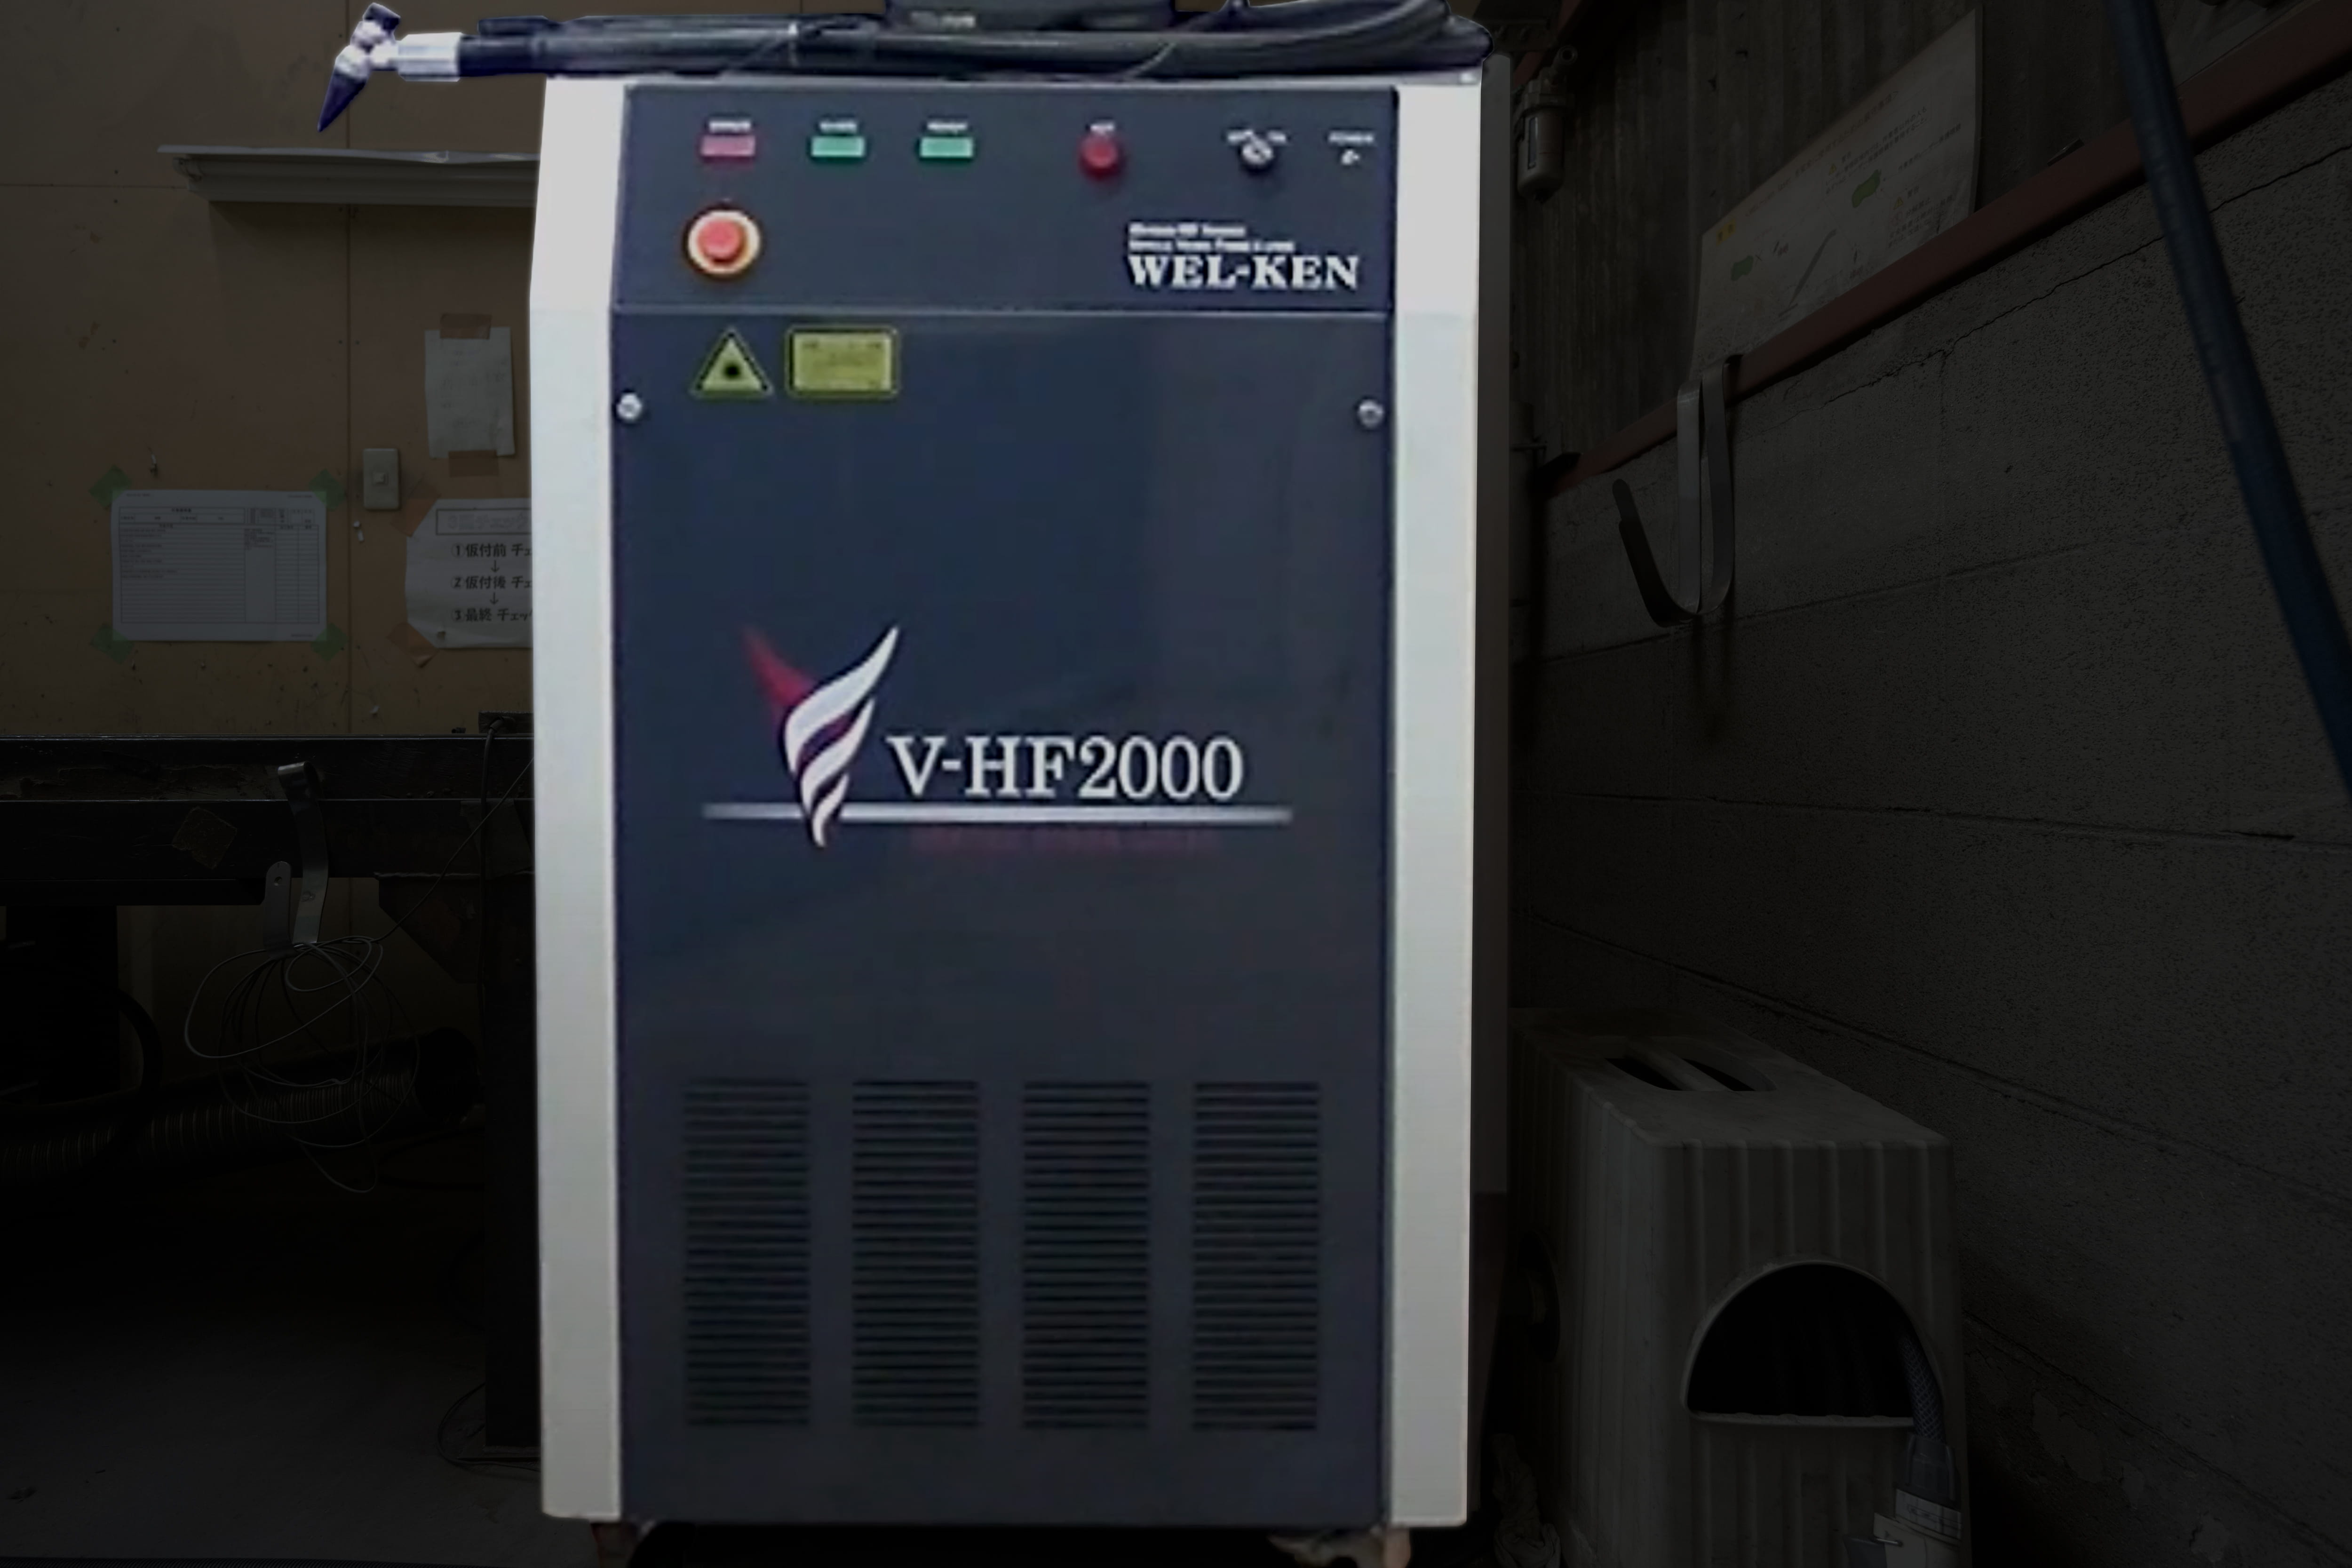 V-HF2000